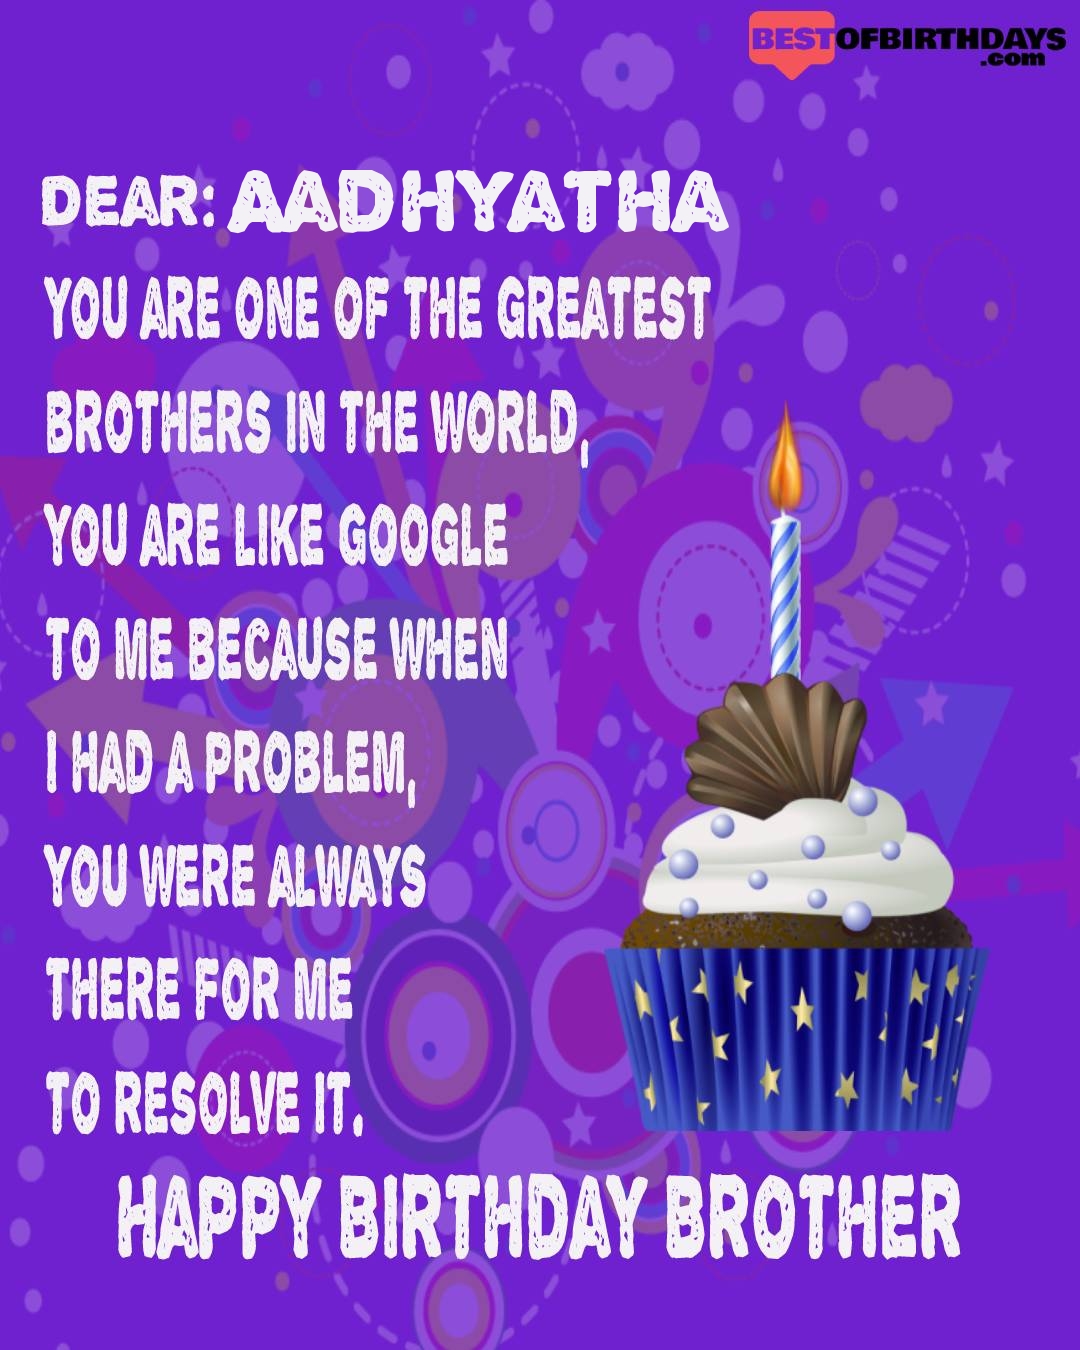 Happy birthday aadhyatha bhai brother bro